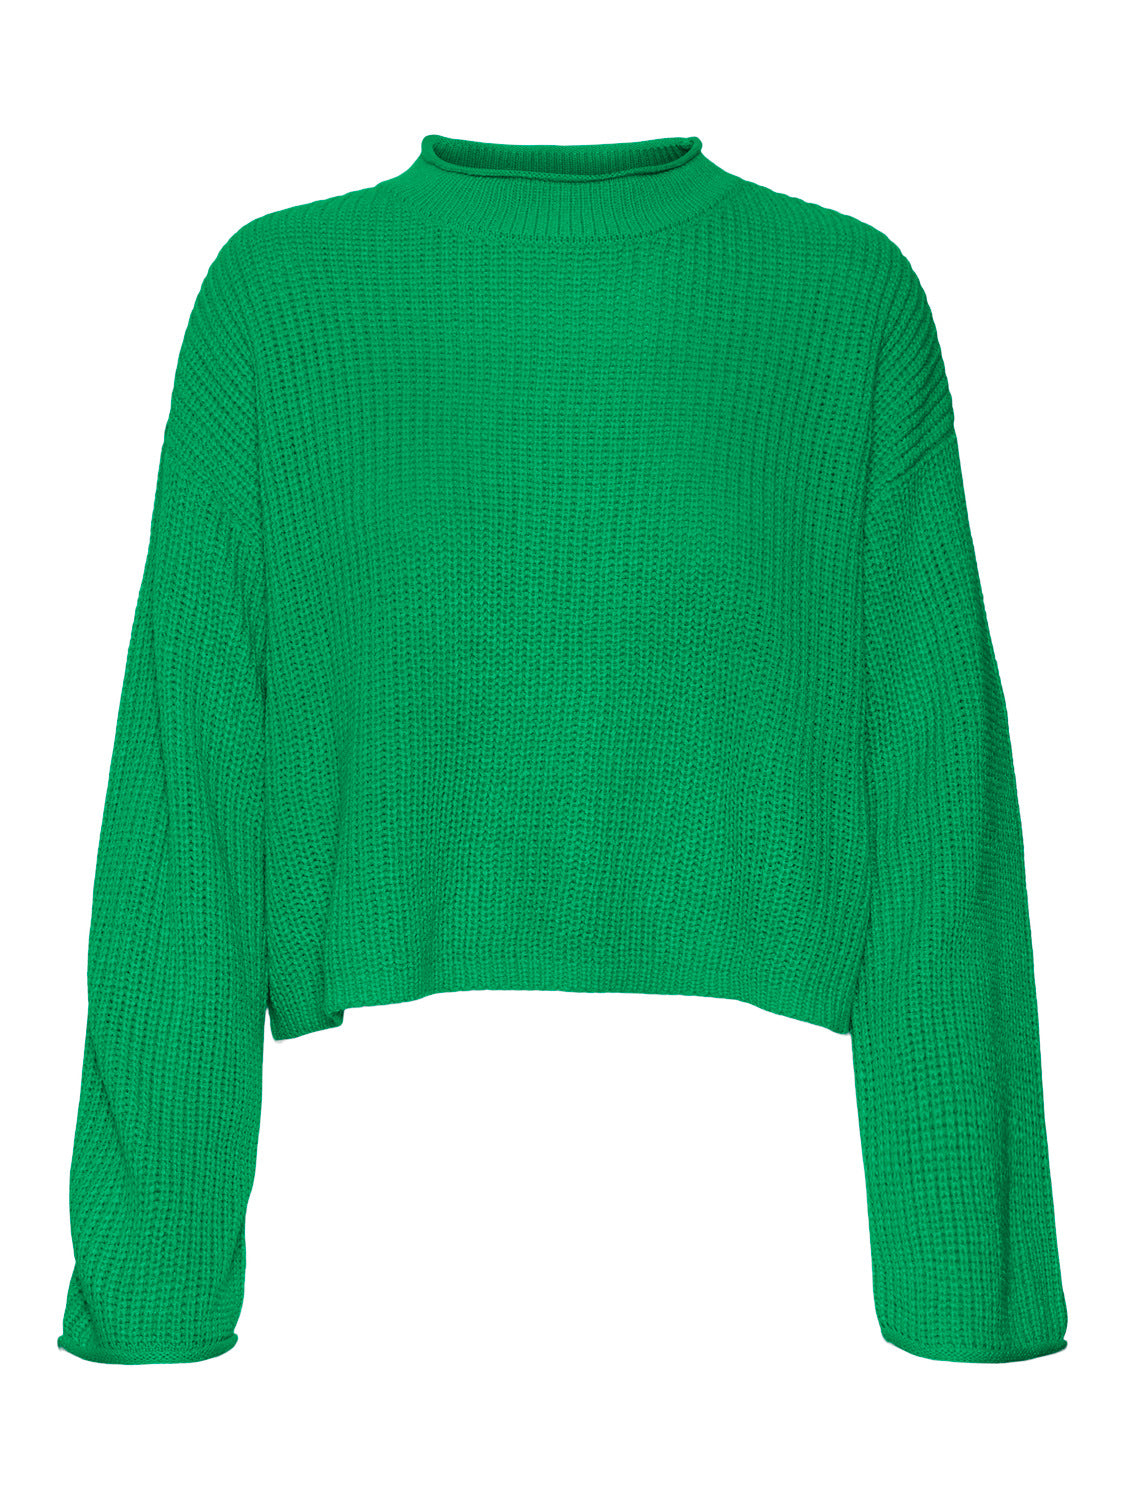 VMSAYLA Pullover - Bright Green